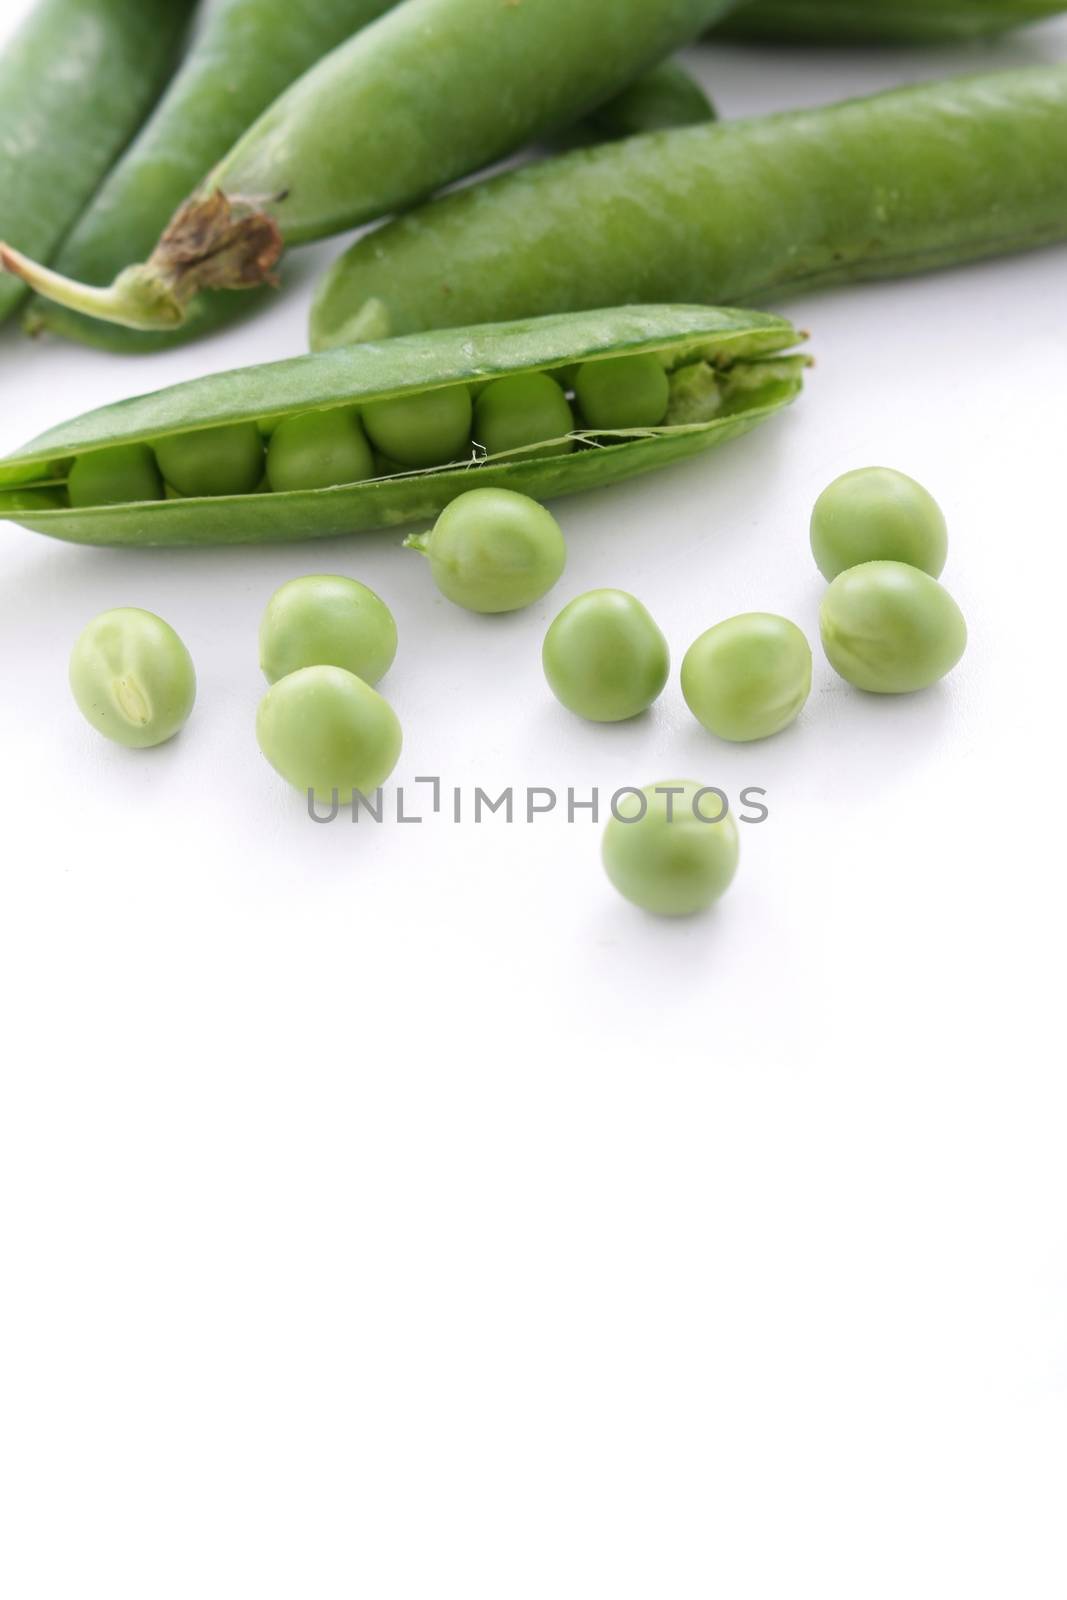 peas in pod by neil_langan